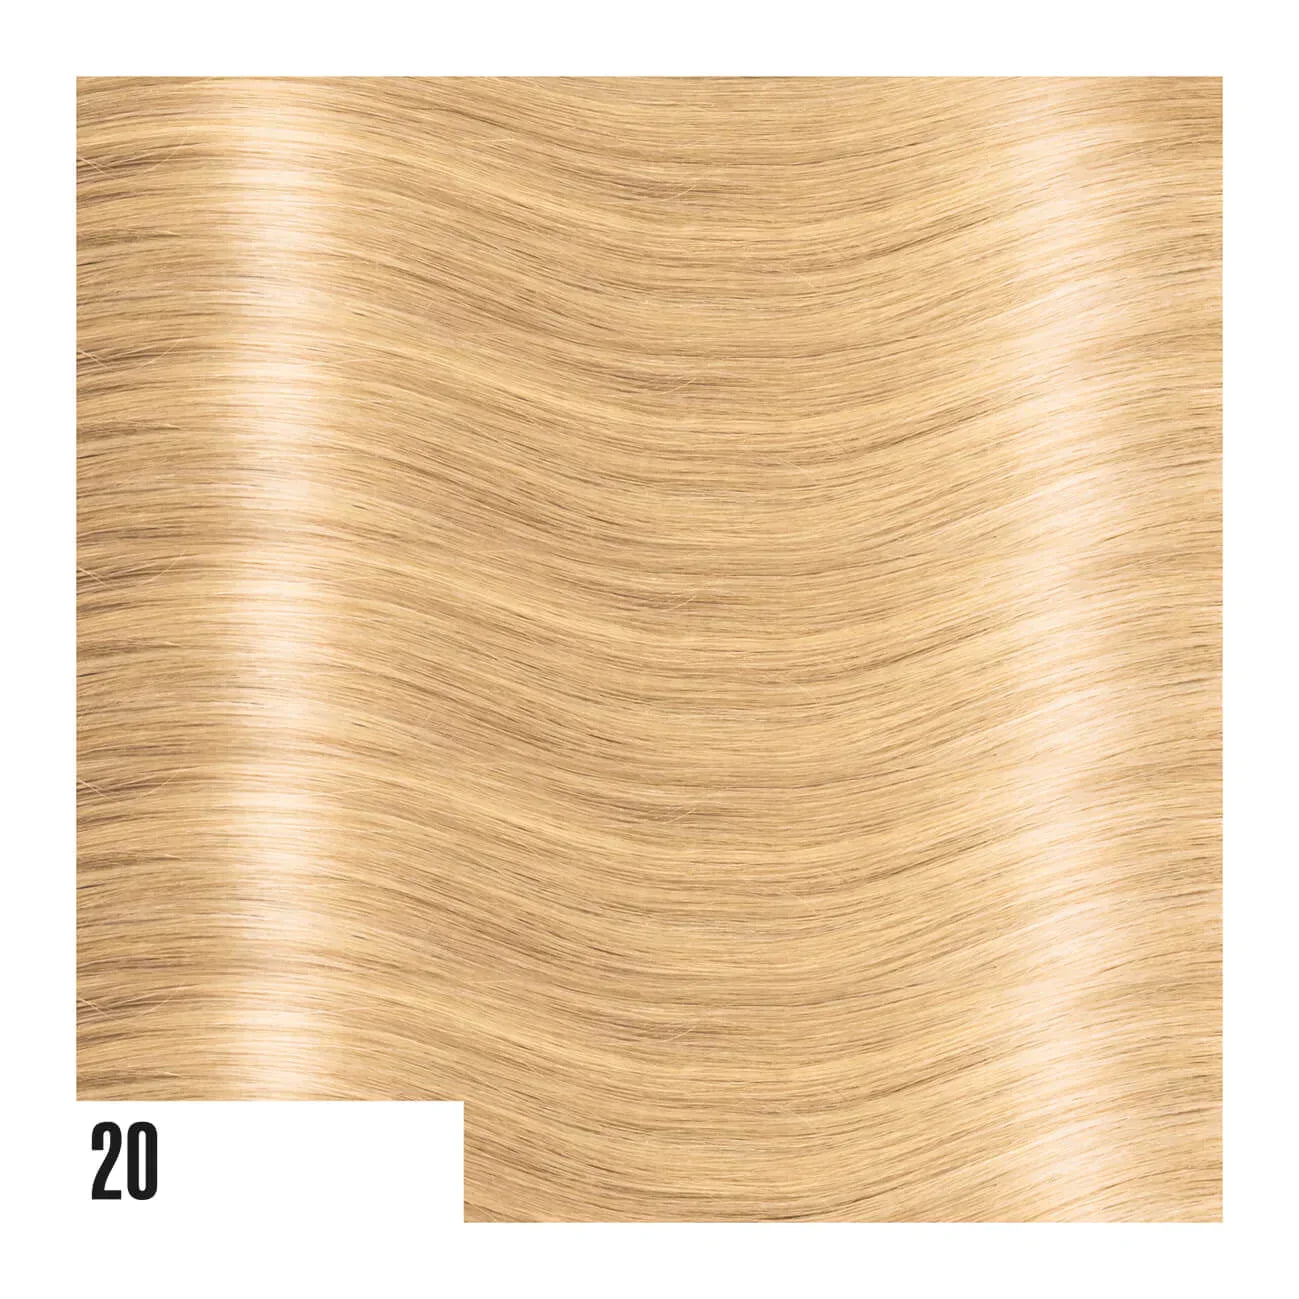 Fascia Adesiva di Hair extension in capelli lisci (50cm/55cm)